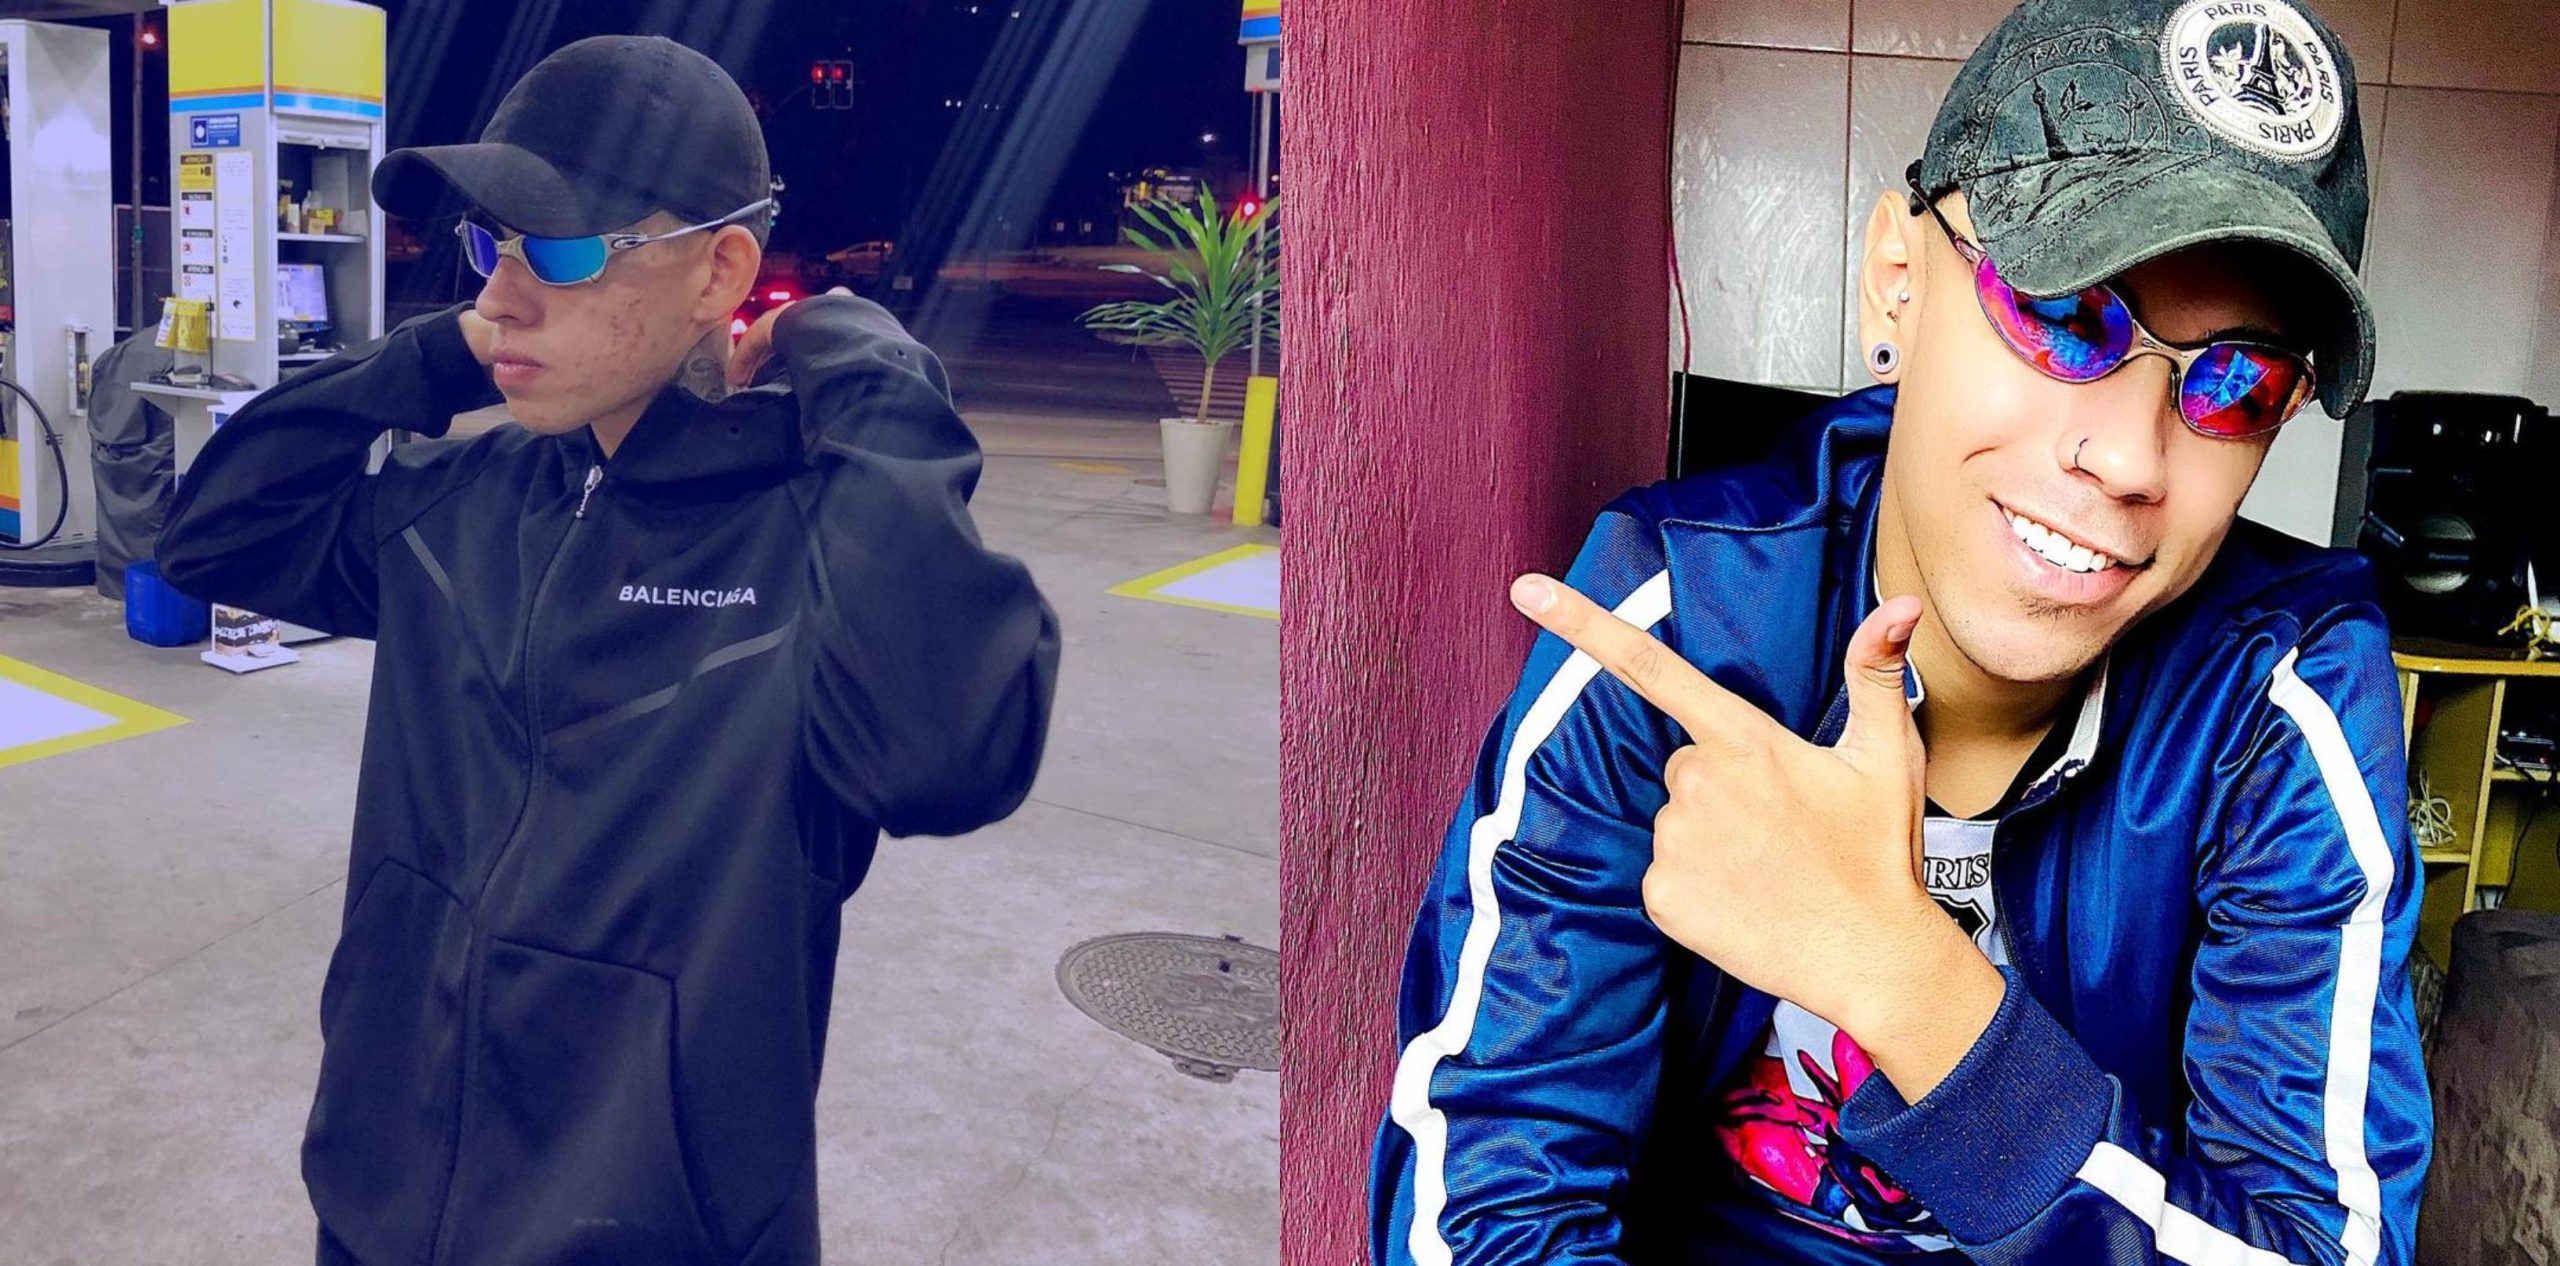 MC Yuri e DJ Bruno Prado contam como é emplacar um hit no TikTok depois de  fazer sucesso com Beat do Empurra - KondZilla